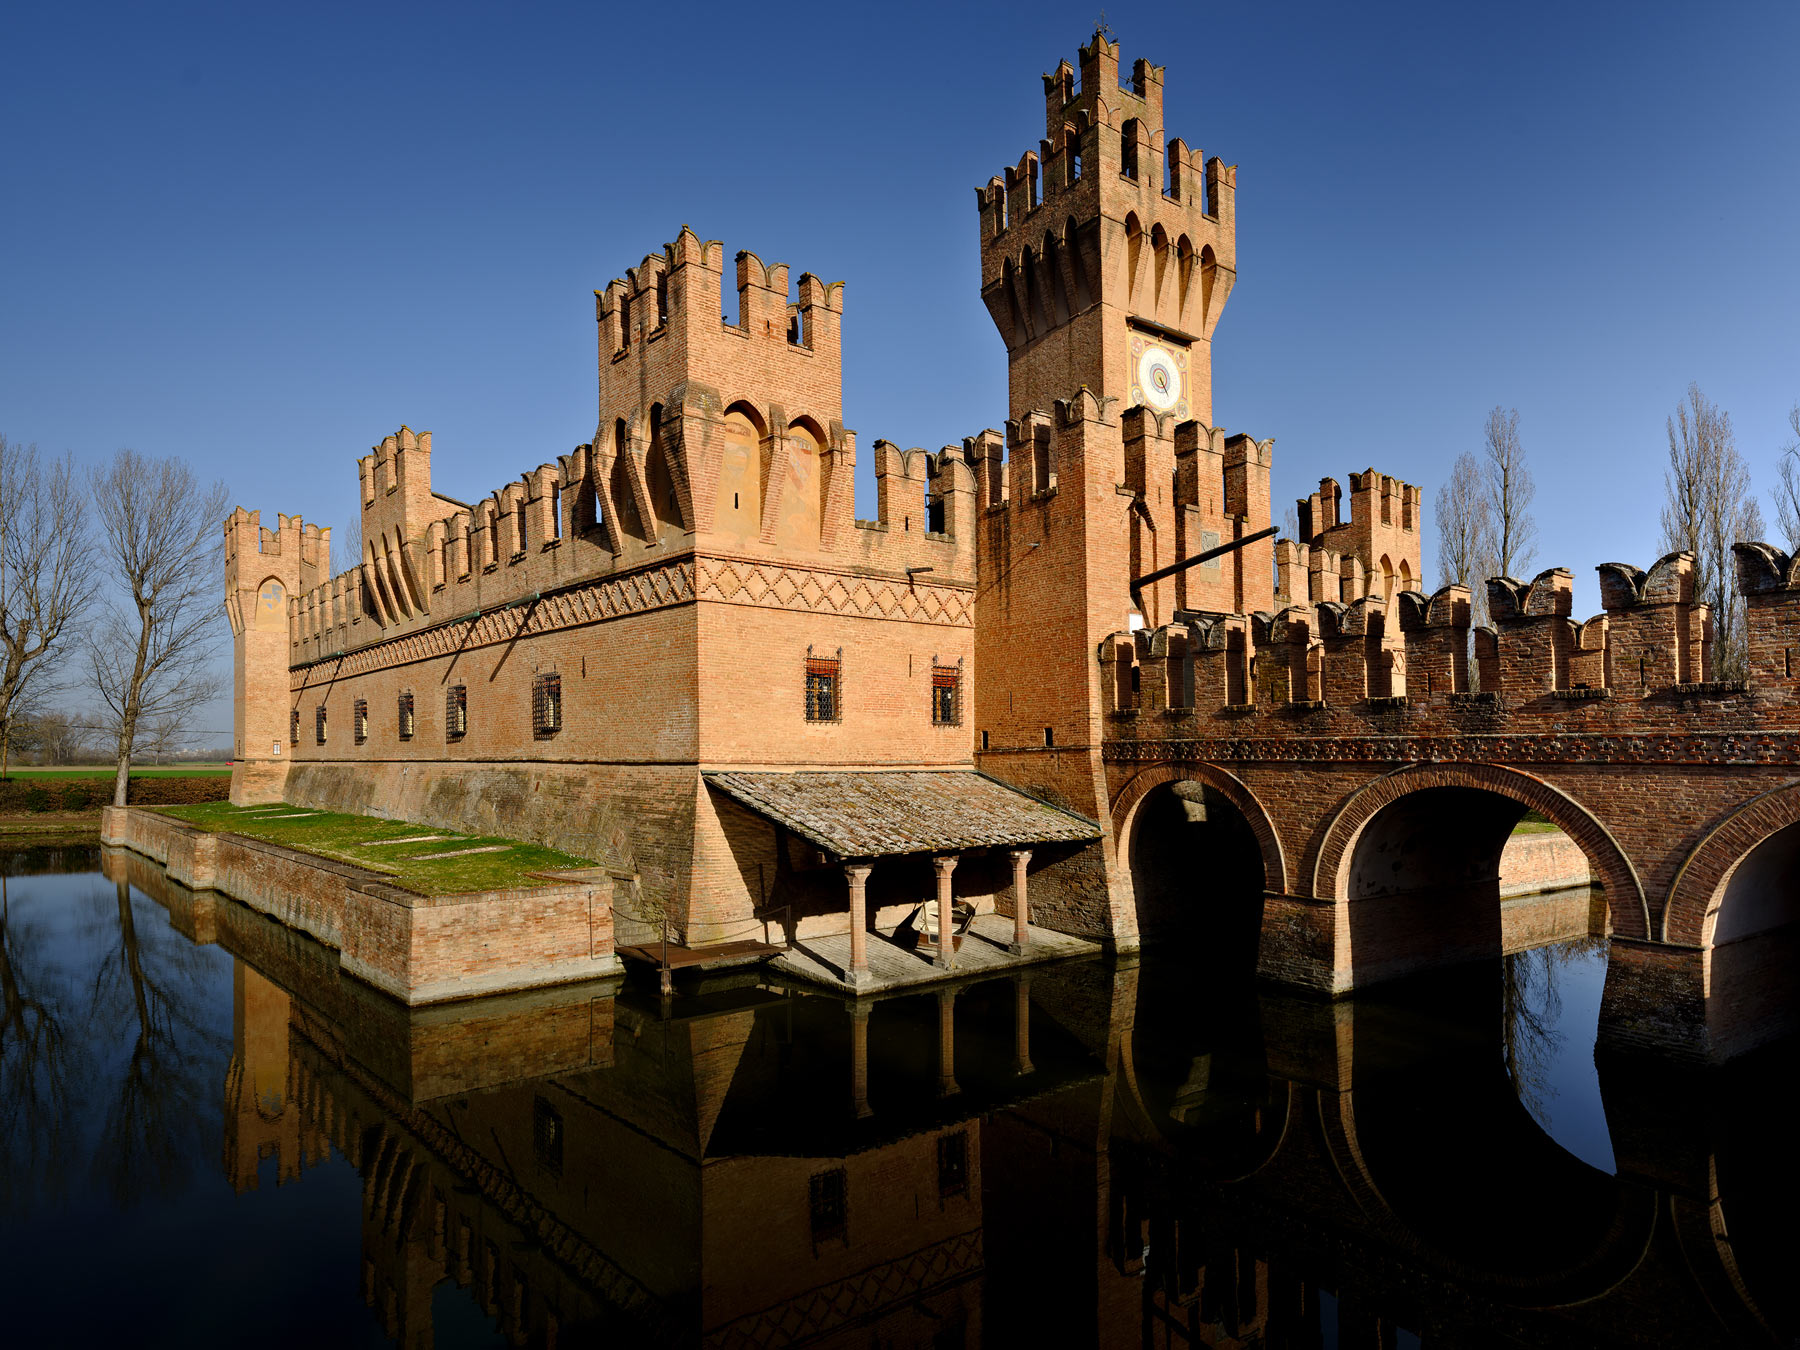 Il Castello di San Martino in Soverzano, sede della Collezione Michelangelo Poletti
